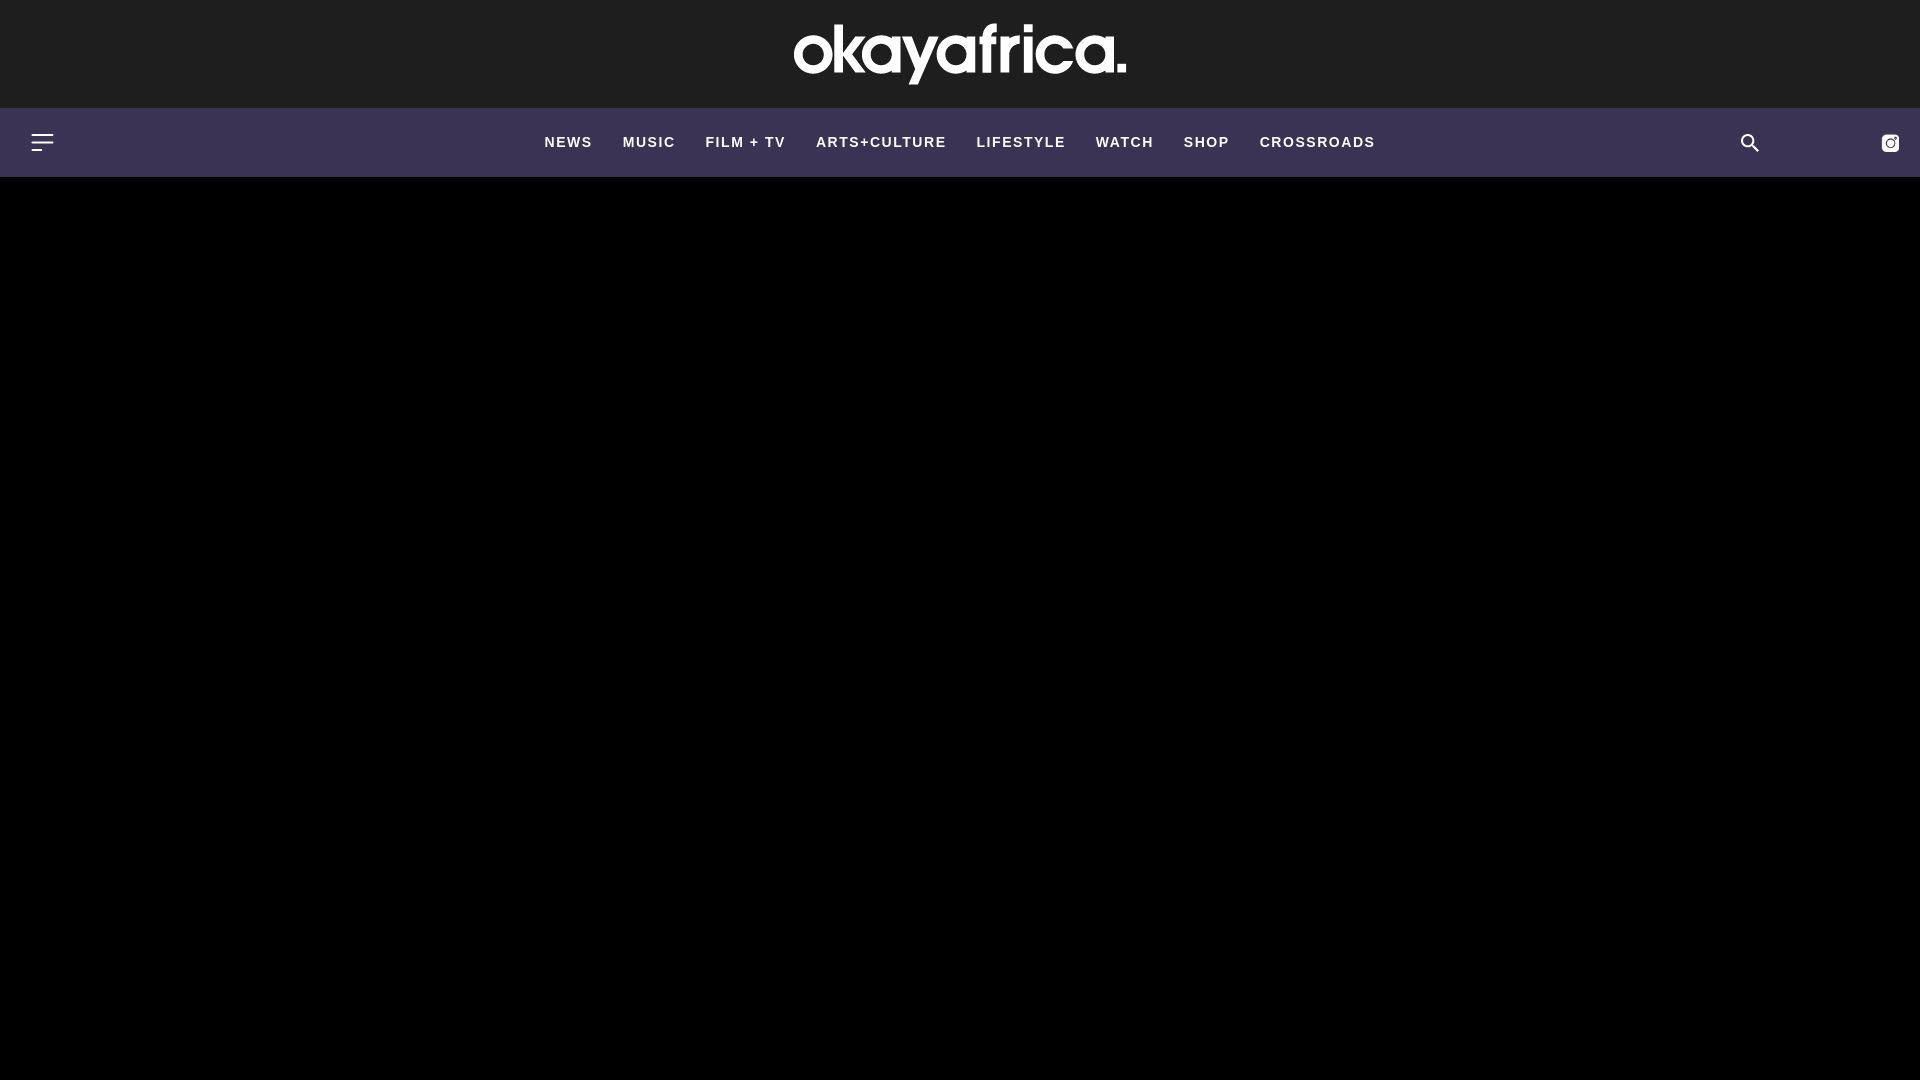 Estado web okayafrica.com está   ONLINE